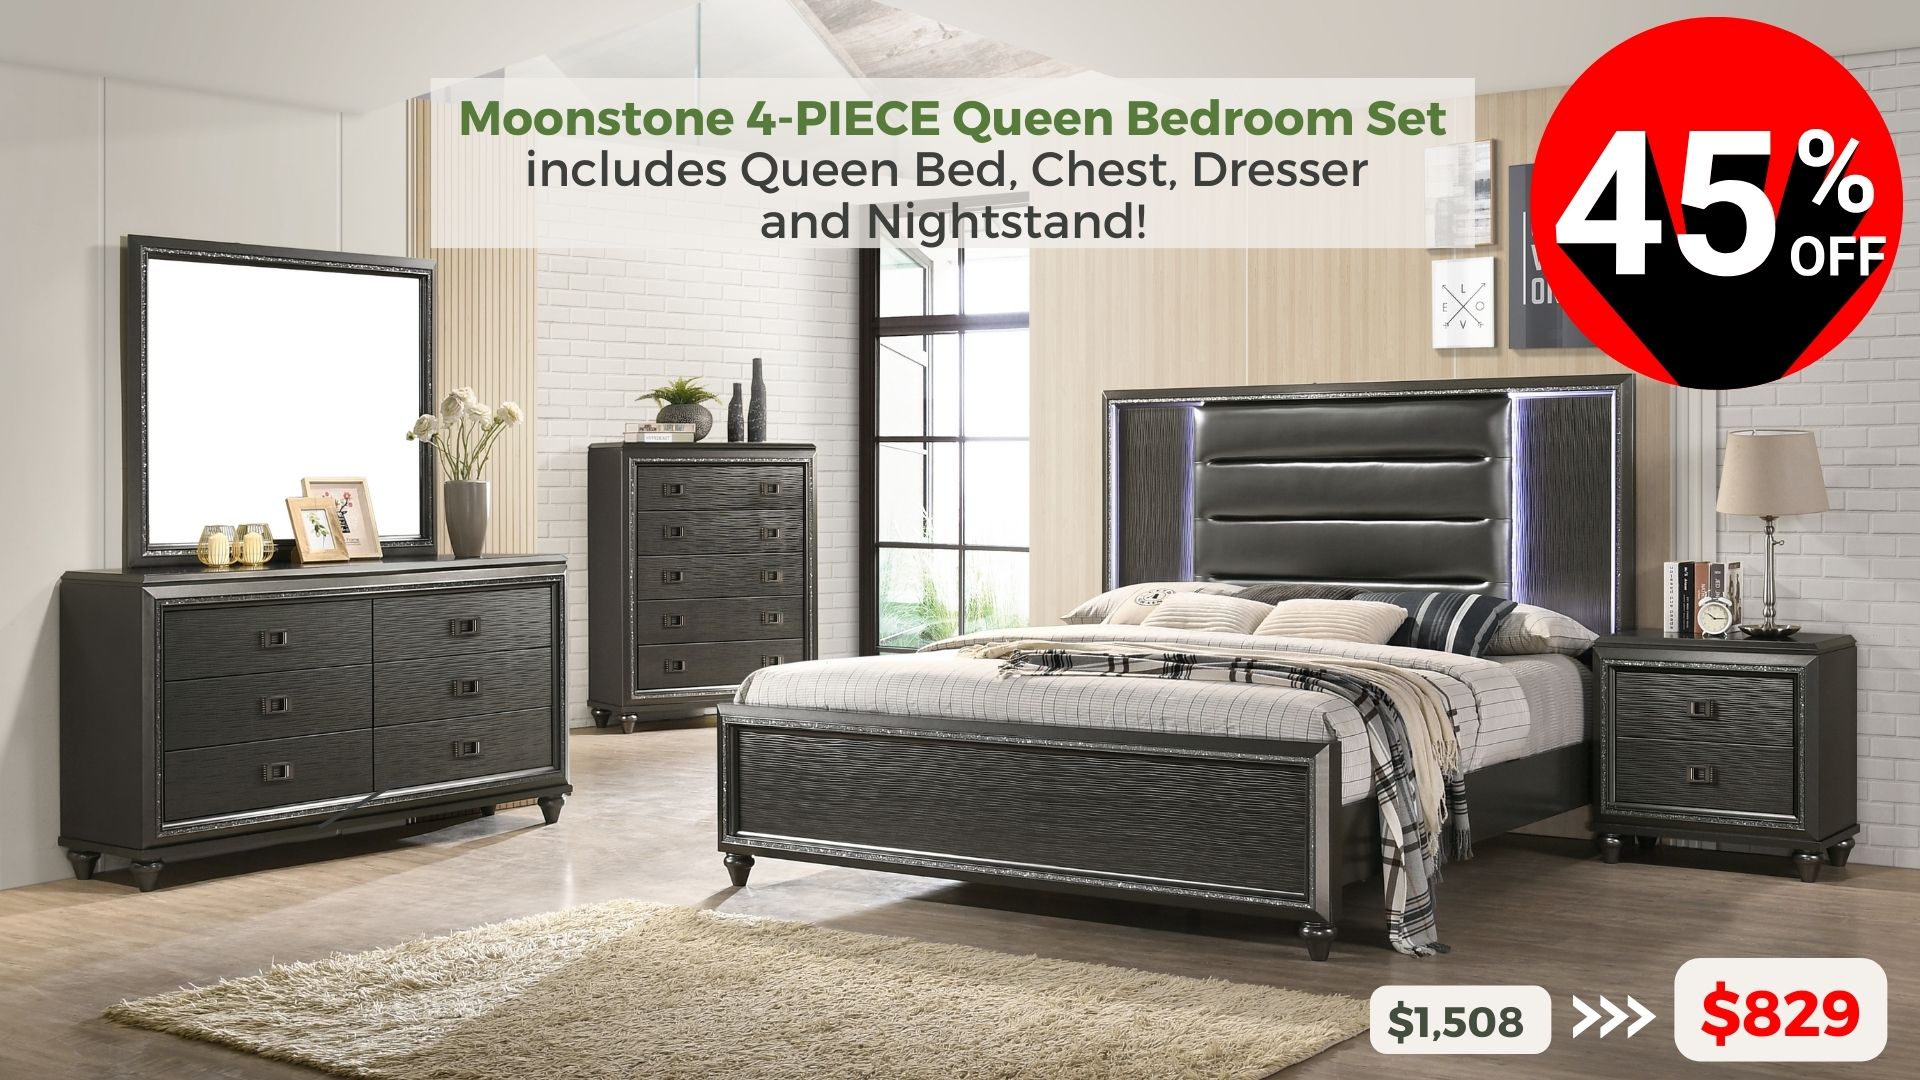 Moonstone 4-piece Queen Bedroom Set includes Queen Bed, Chest, Dresser and Nightstand. 35% off buy now $829